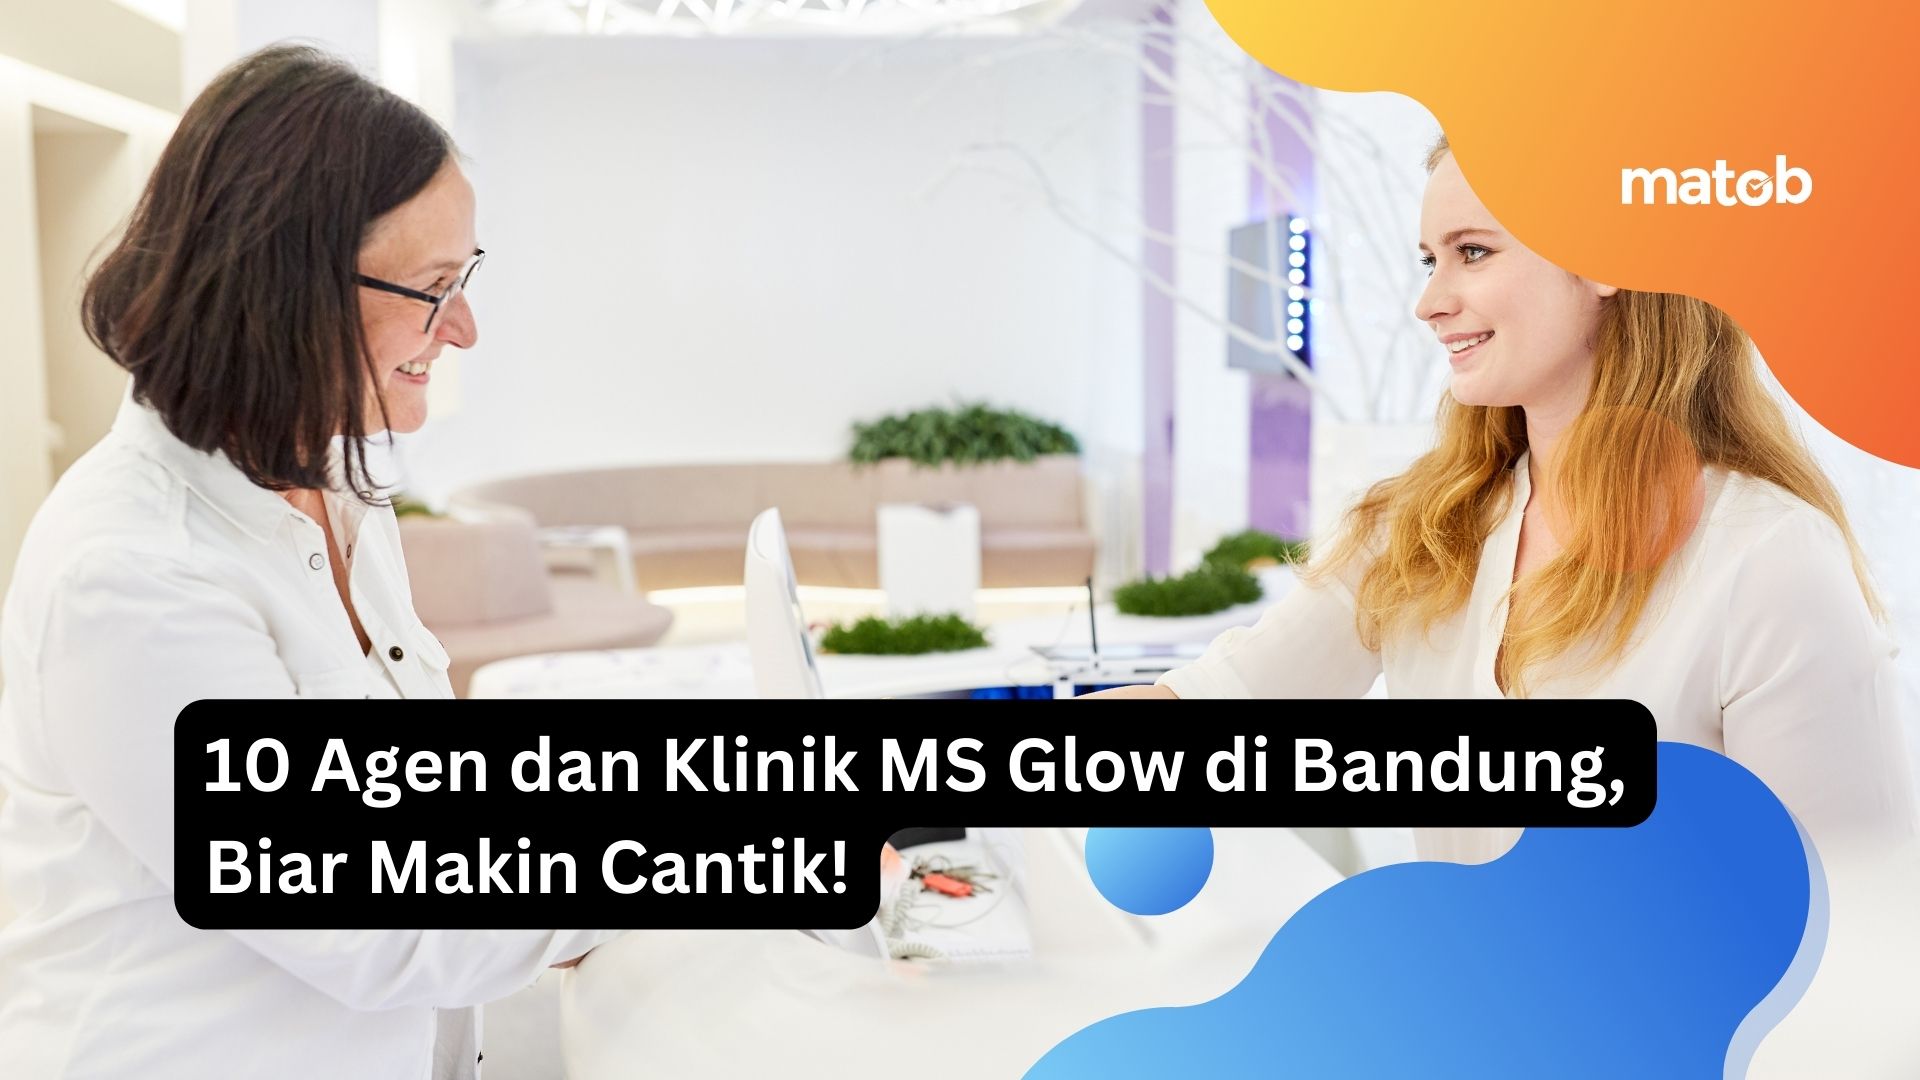 10 Agen dan Klinik MS Glow di Bandung, Biar Makin Cantik!